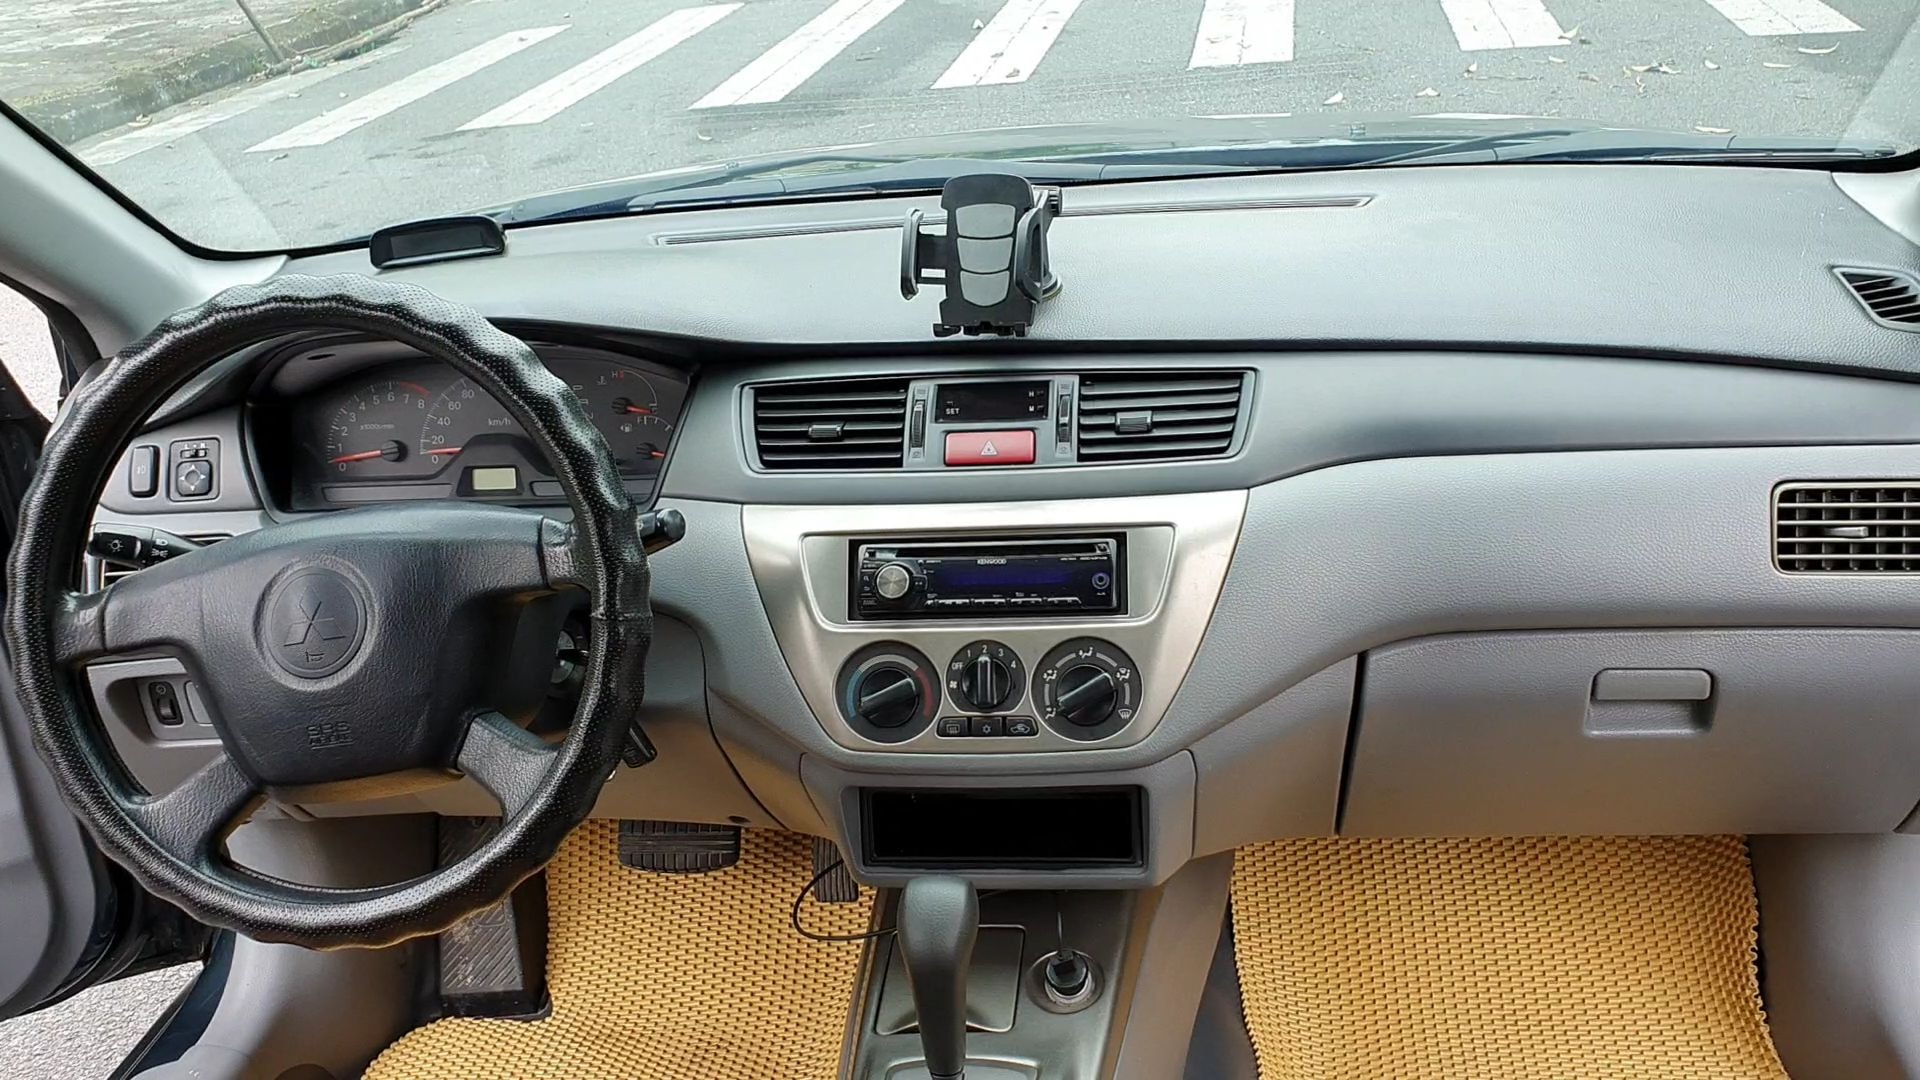 Rèm Che Nắng Xe Mitsubishi Lancer Gala Hàng Loại 1 MR Ô TÔ  Phụ kiện nội  thất ô tô